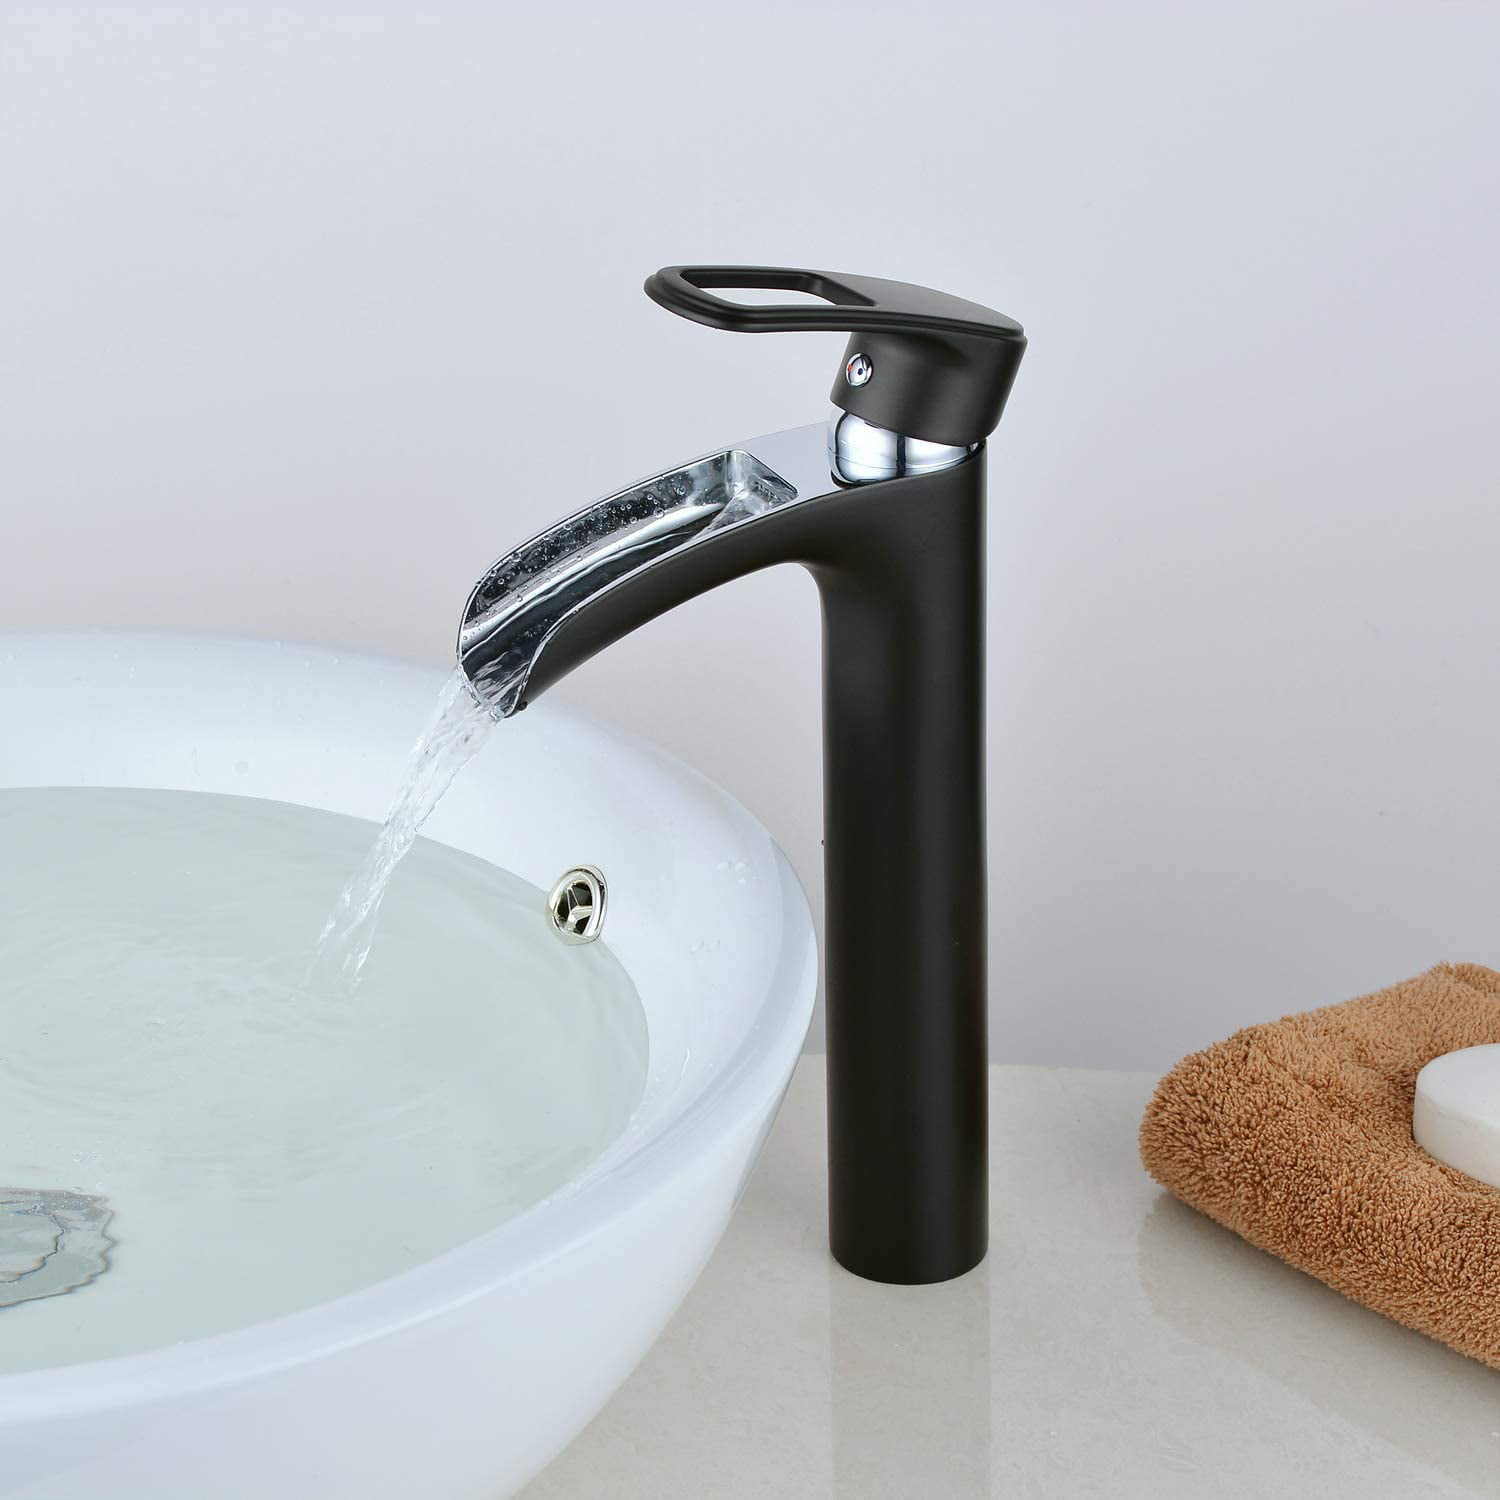 Black Chrome Bathroom Long Spout Mixer Single Handle/Hole Faucet Taps Deck Mount 